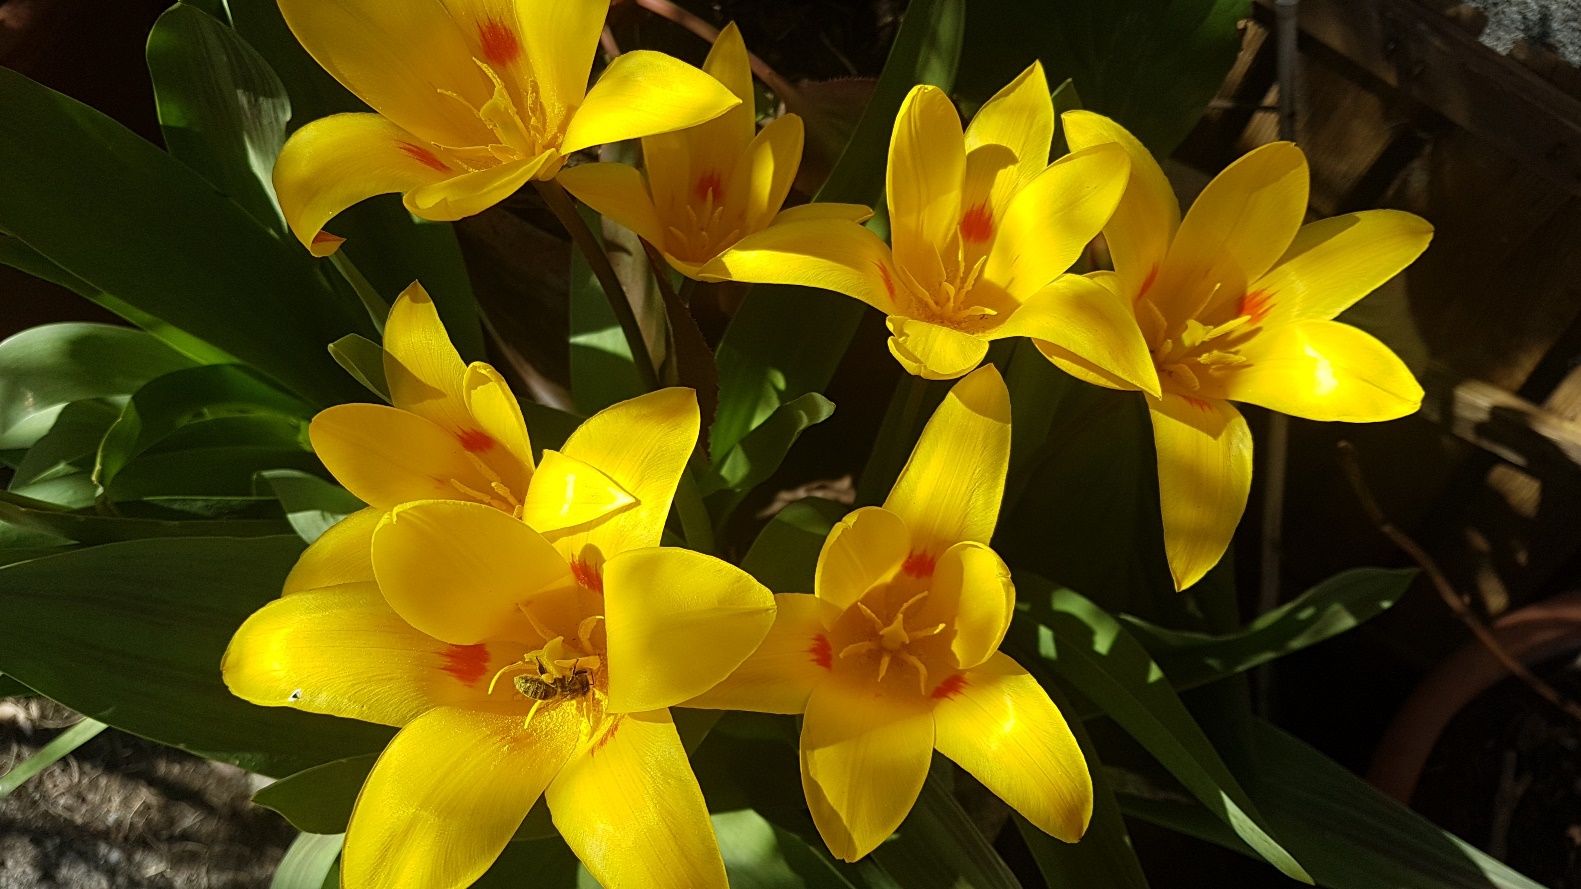 Slika, ki vsebuje besede roža, rastlina, rumeno

Opis je samodejno ustvarjen